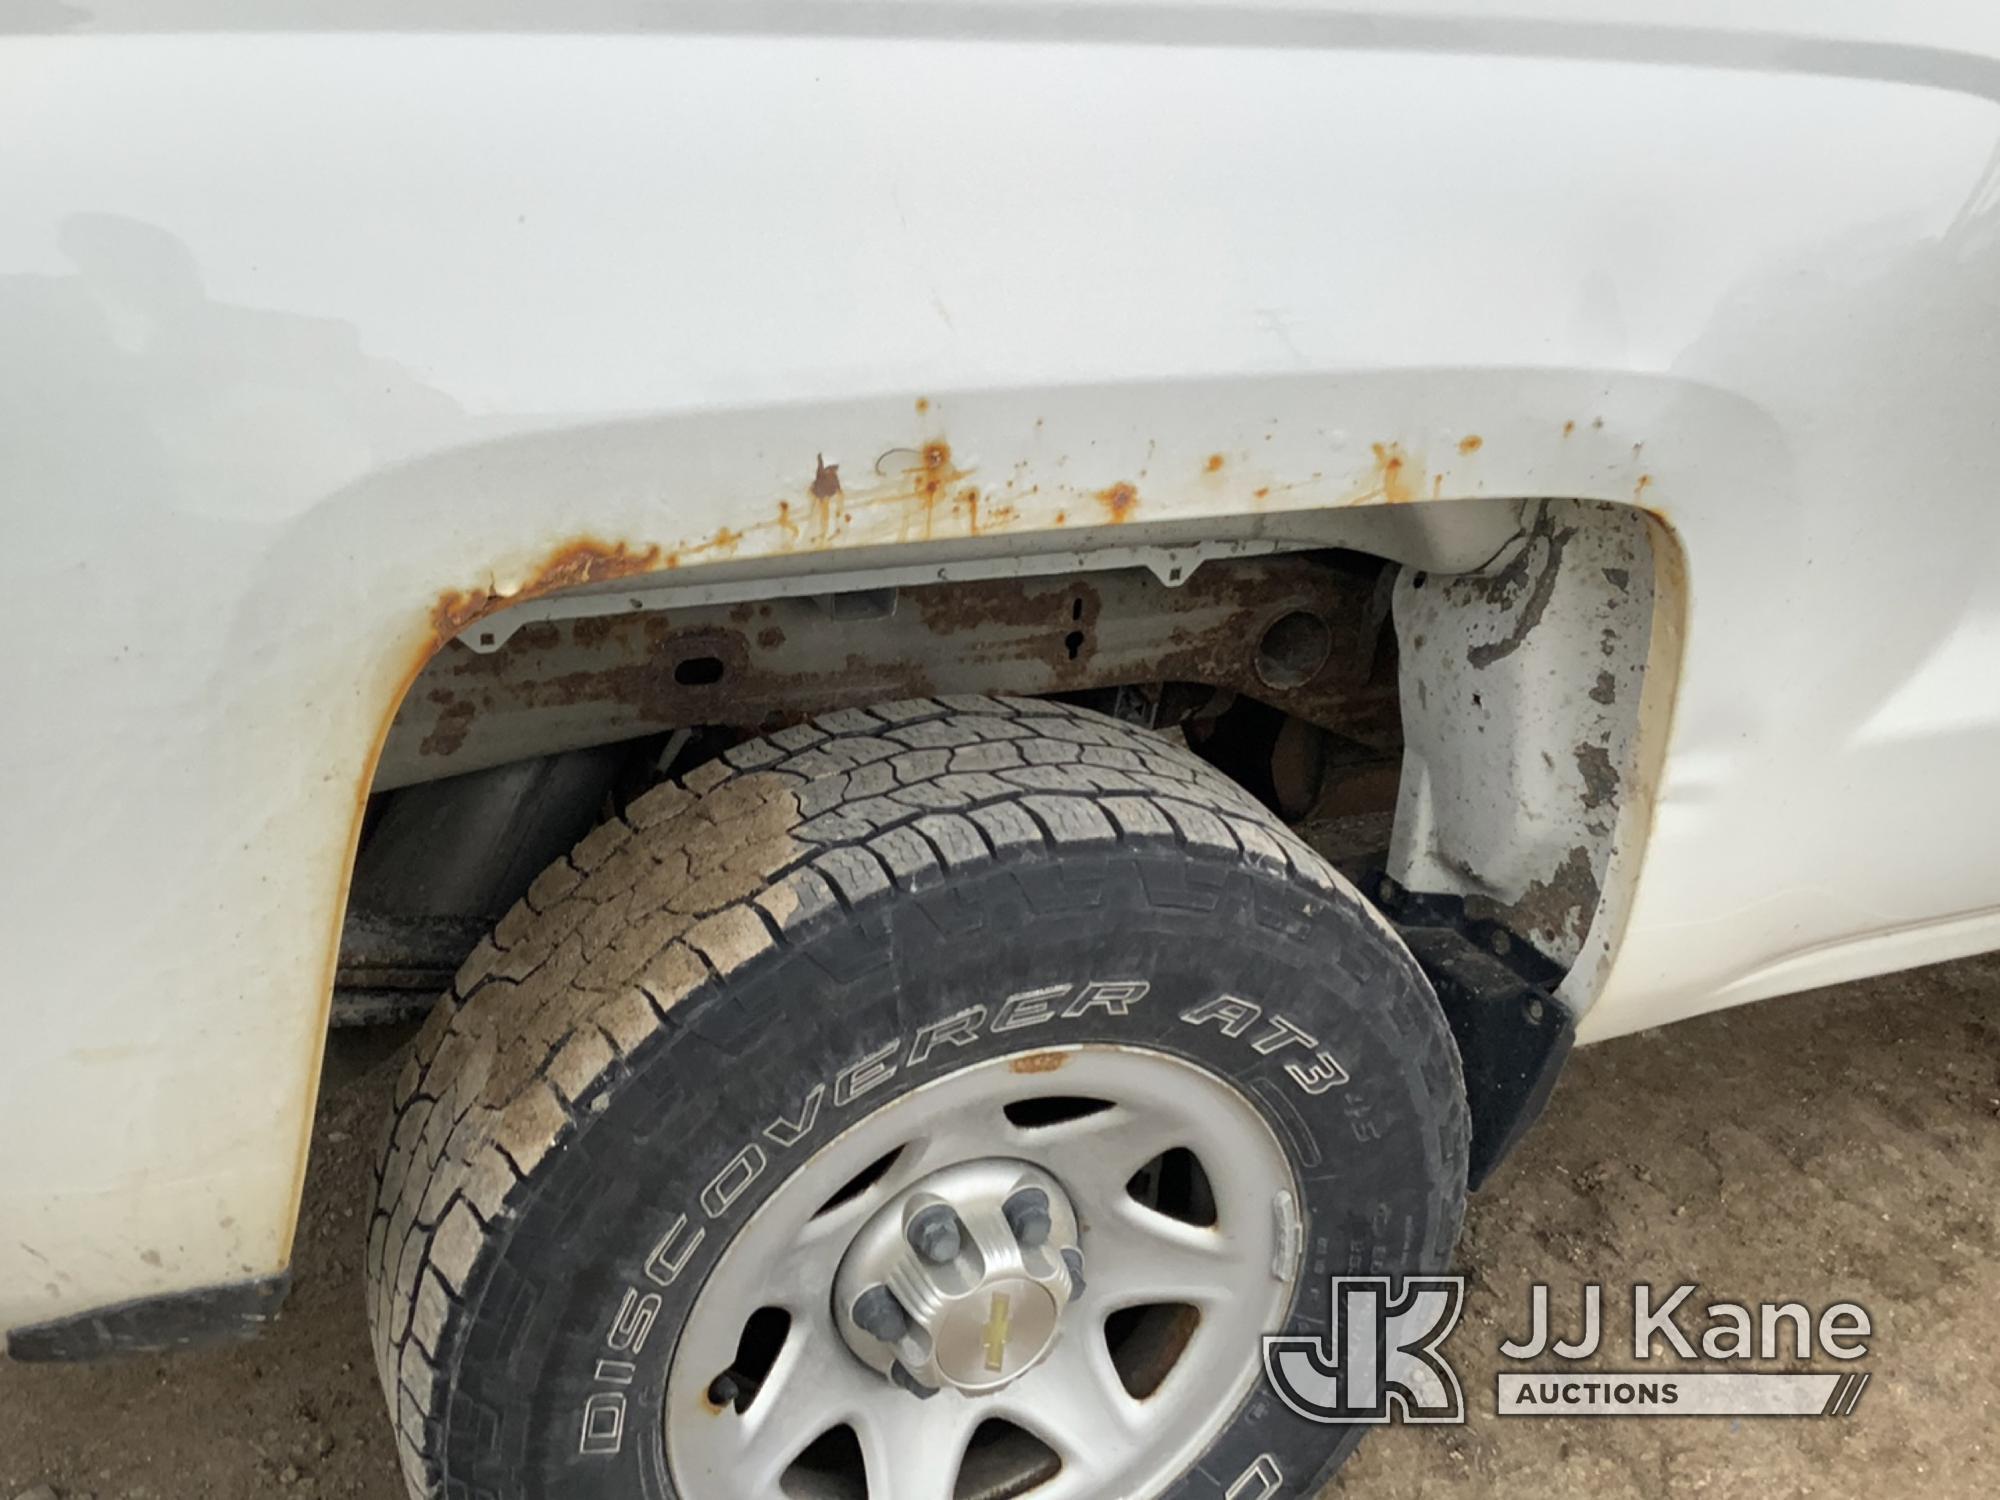 (Charlotte, MI) 2014 Chevrolet Silverado 1500 4x4 Double-Cab Pickup Truck Runs & Moves) (Rust Damage